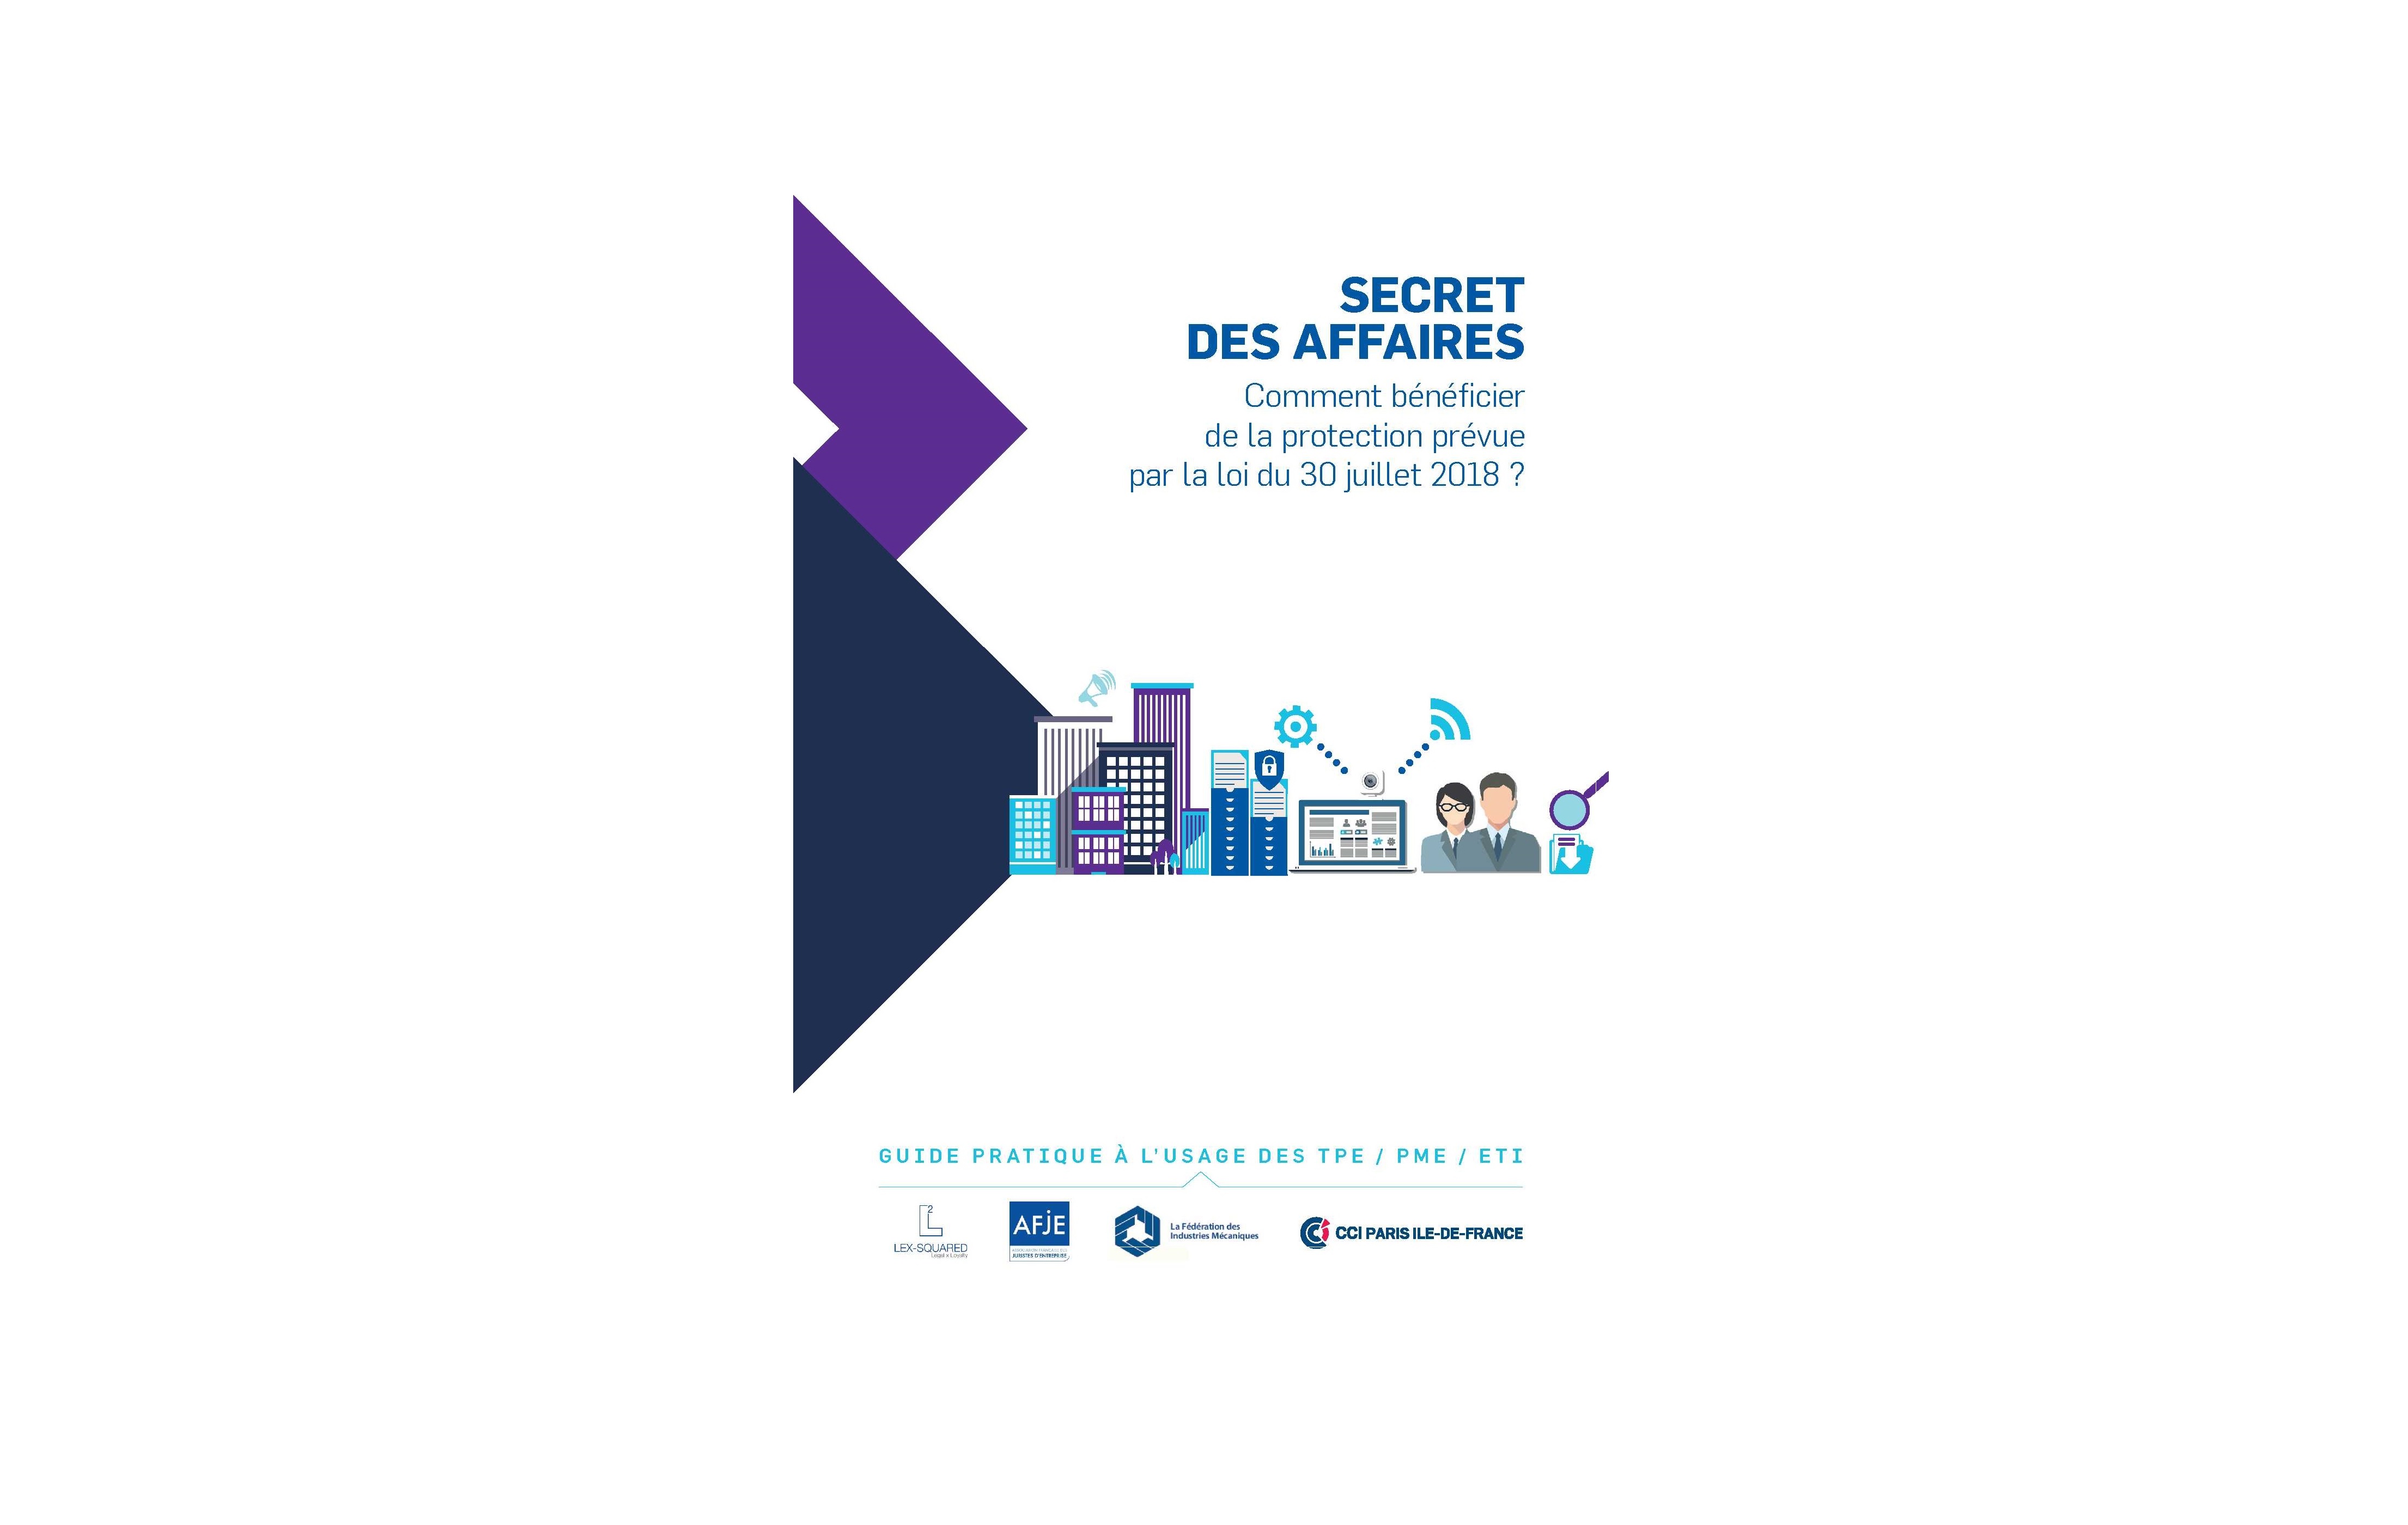 Parution d’un guide pratique « Secret des Affaires » à l'usage des TPE/PME/ETI - Image de couverture